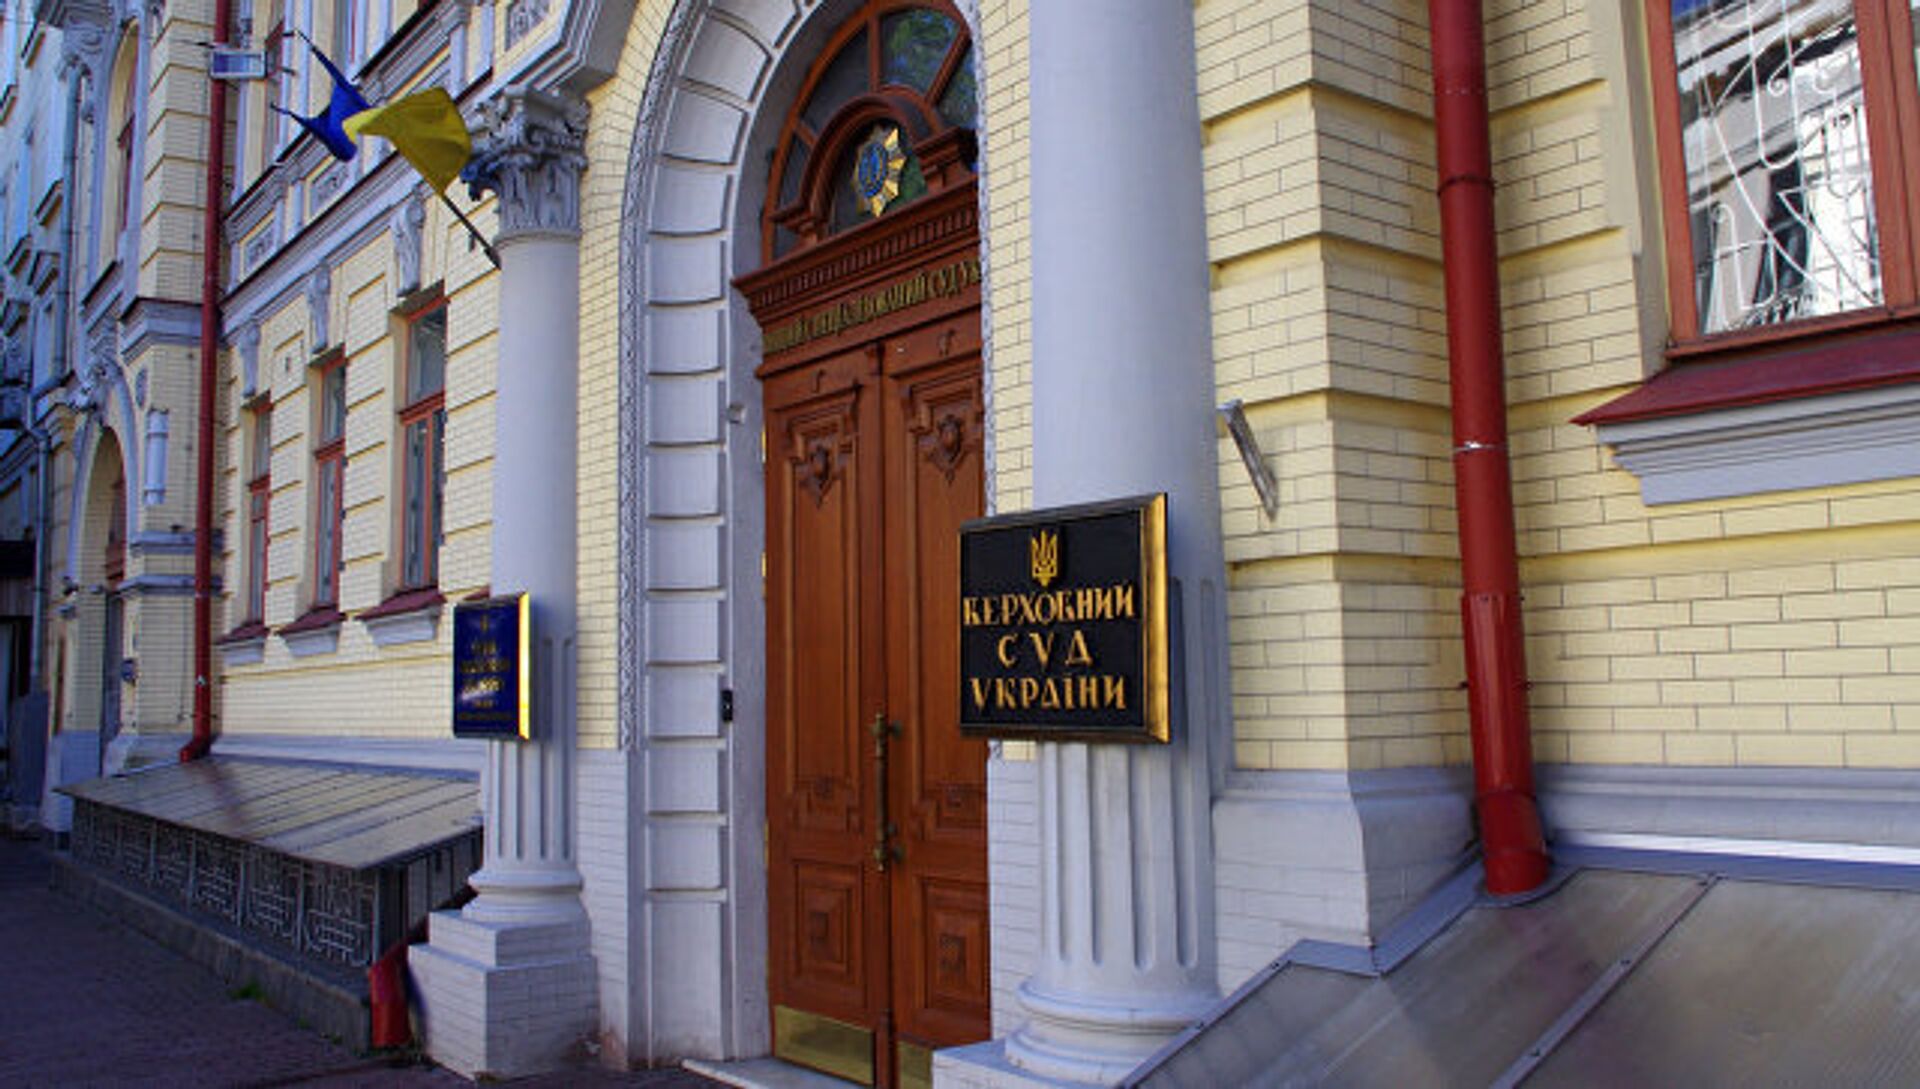 Вход в здание Верховного суда Украины в Киеве. Архивное фото - РИА Новости, 1920, 28.10.2019